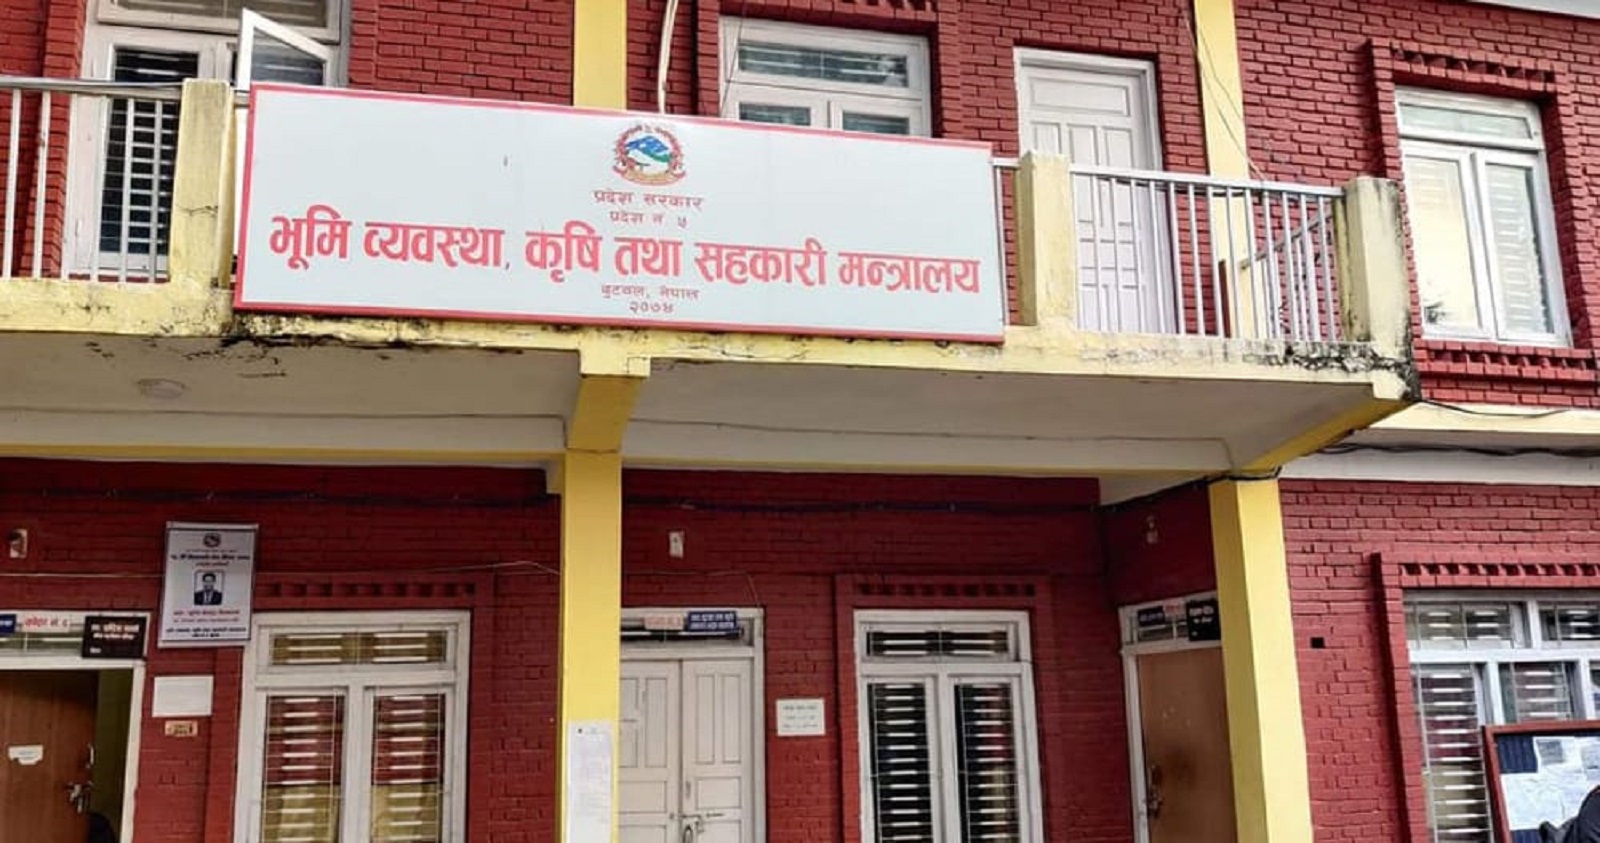 लुम्बिनी प्रदेशले करारमा माग्यो ४३६ कर्मचारी (सूचनासहित)